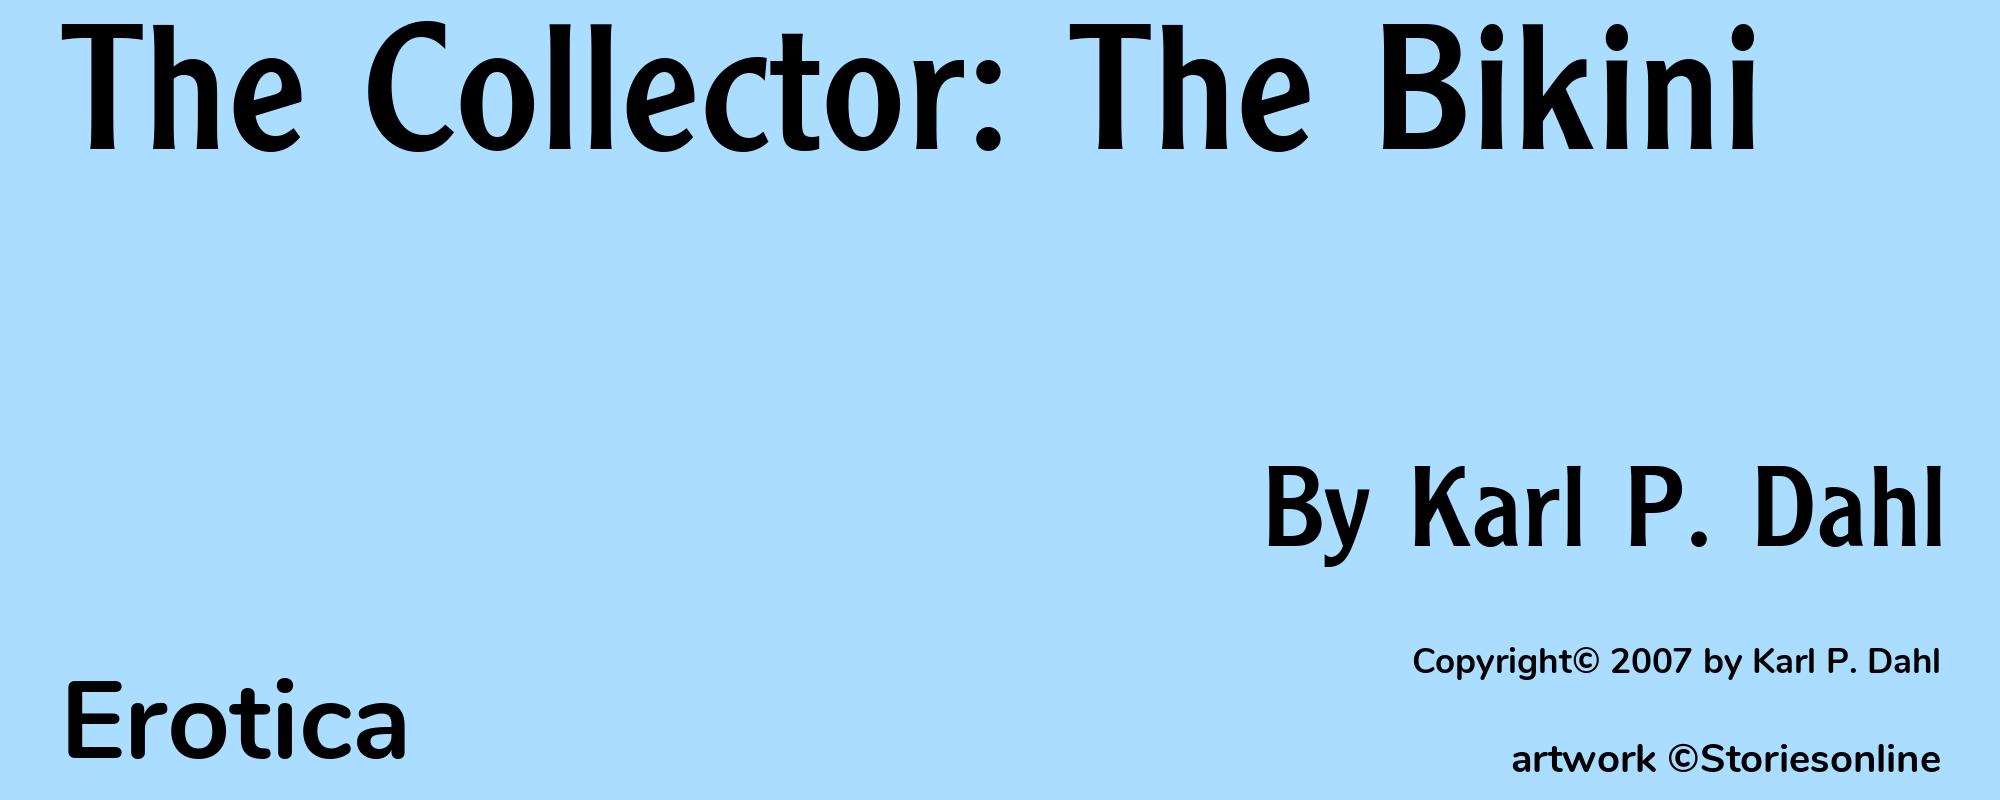 The Collector: The Bikini - Cover